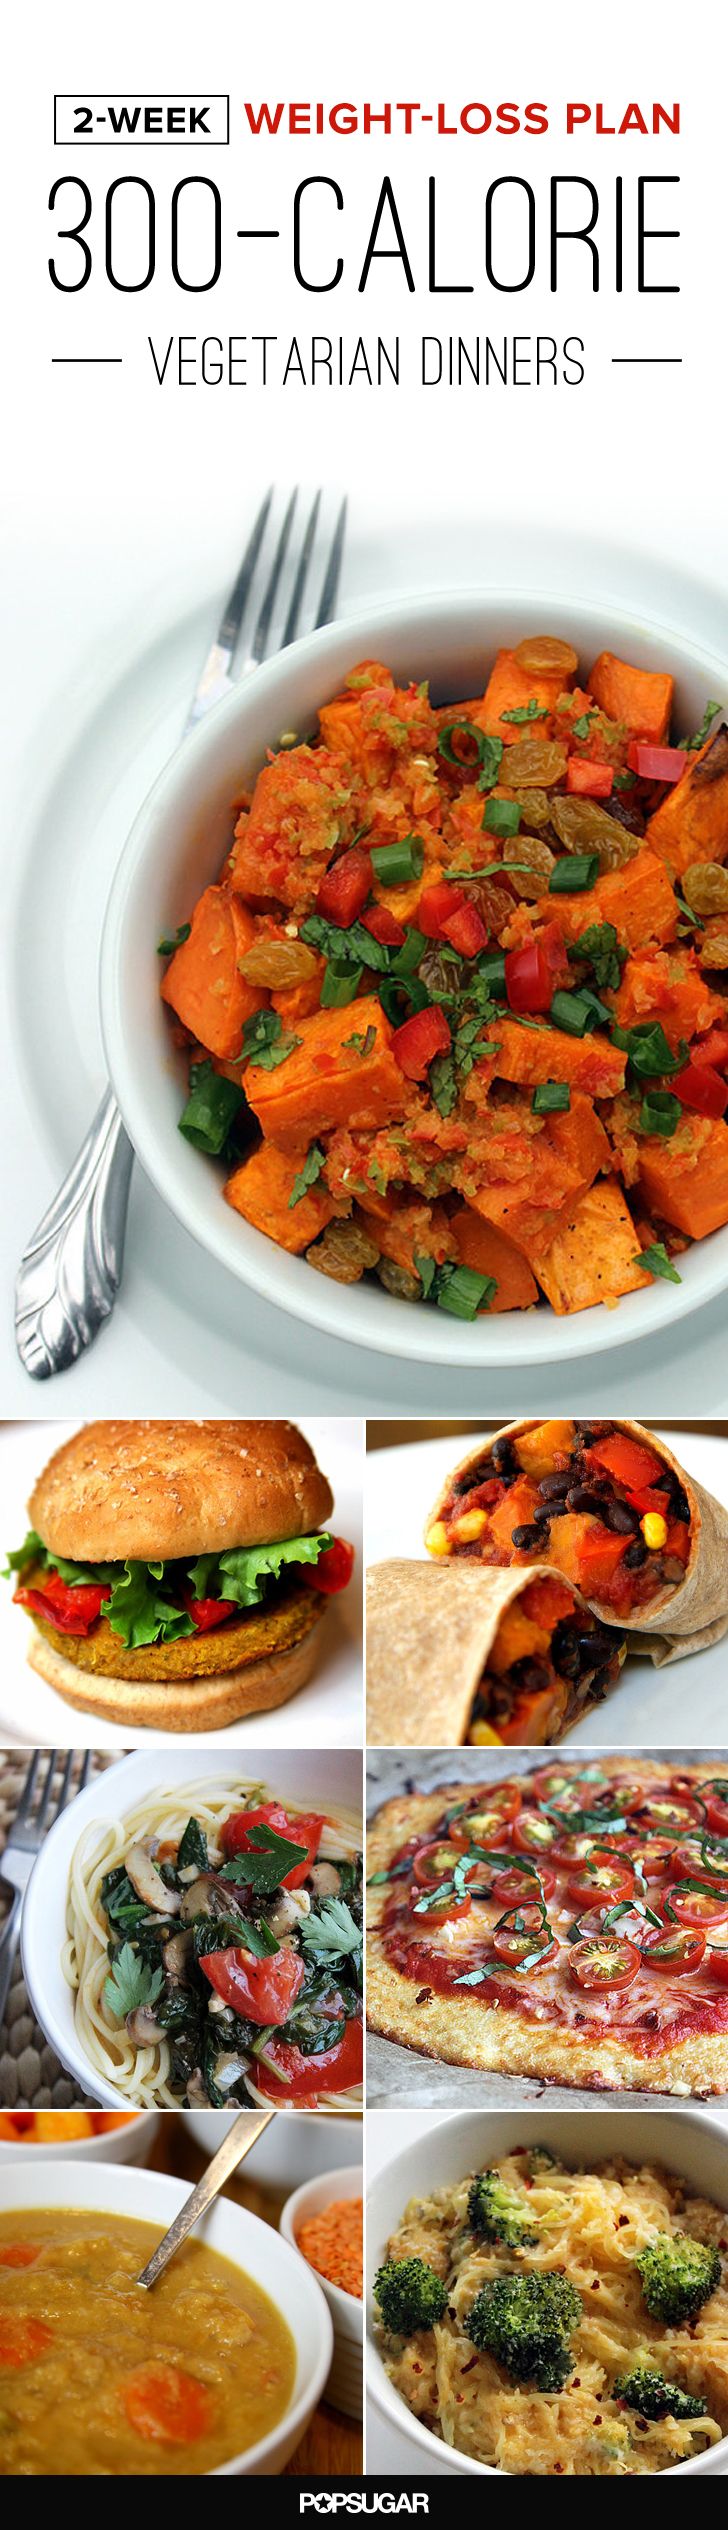 Low Calorie Lunch Ideas Under 300 Calories Vegetarian